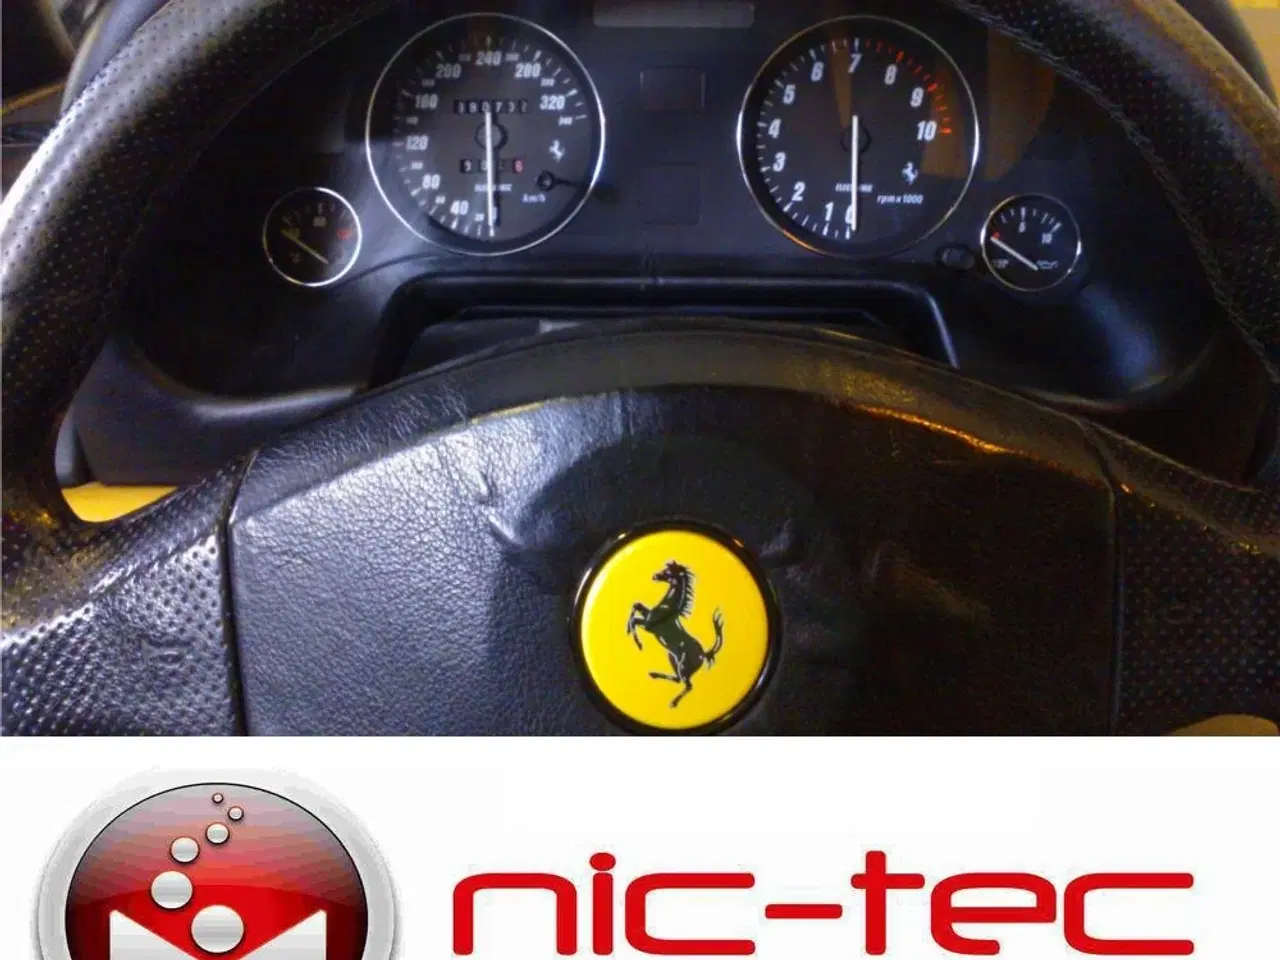 Billede 1 - Ferrari 456 gta Speedometer Rep.